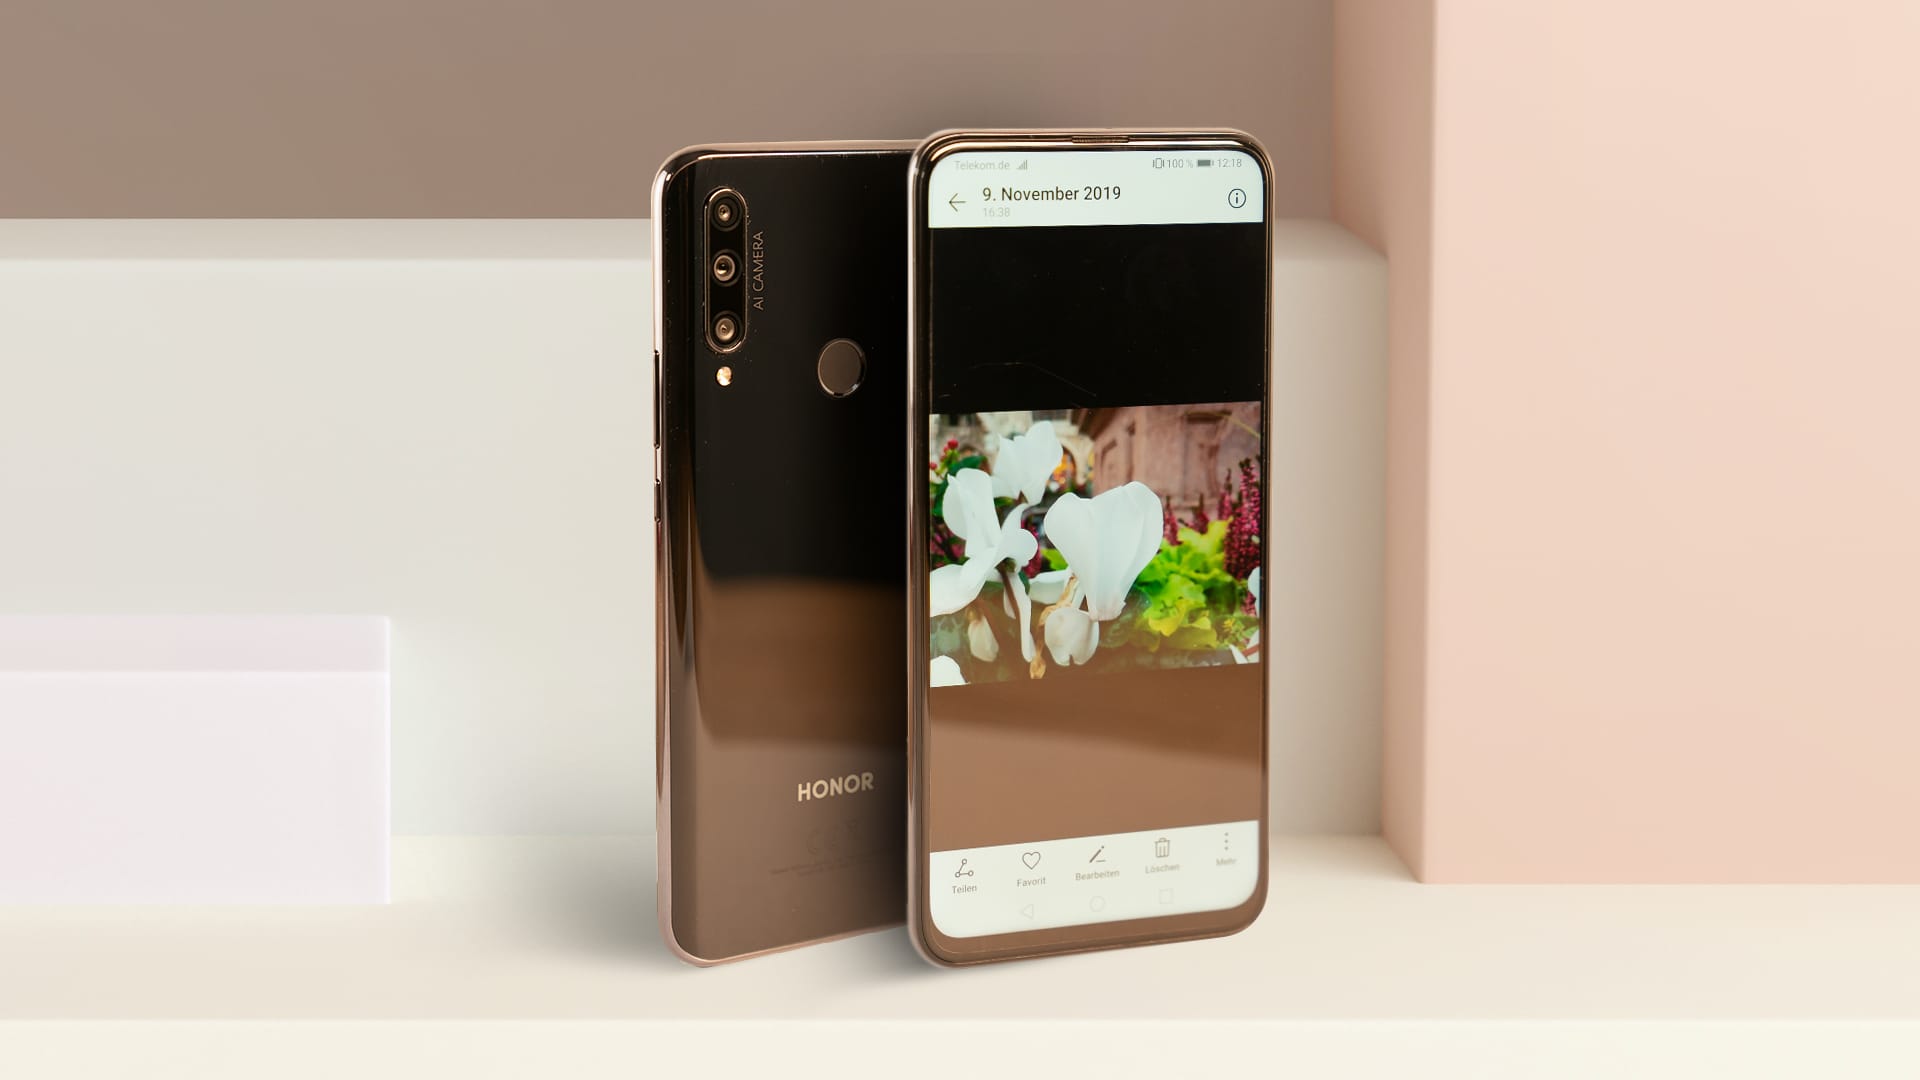 Trotz US-Sanktion erscheint das Smartphone der Huawei-Tochter Honor mit Google-Diensten. Wie die Vorgänger soll auch dieses Gerät mit guter Technik für wenig Geld beeindrucken. Unser Test zeigt, was das Honor 9X wirklich kann.